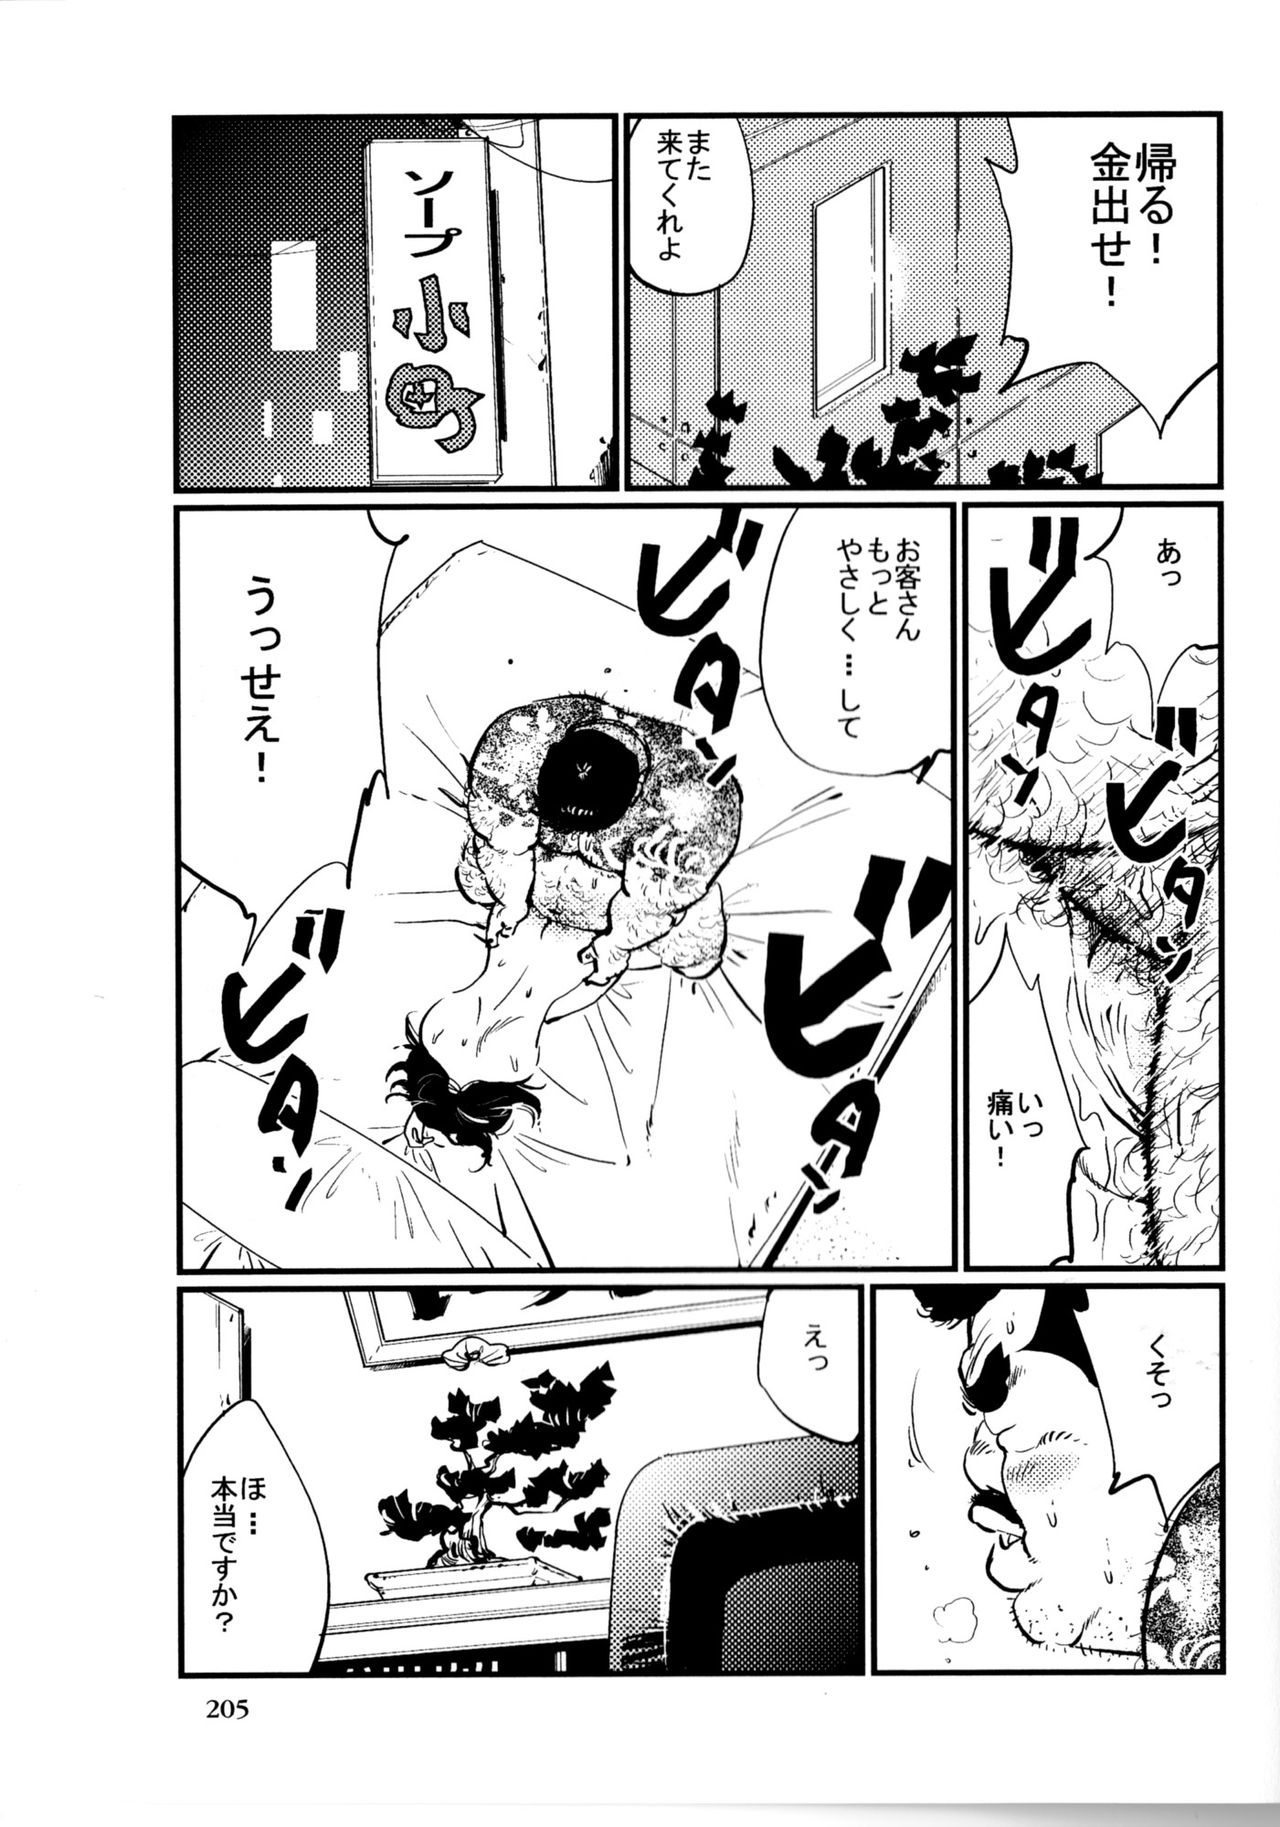 [Kobinata] Tenkei Mondai (SAMSON No.363 2012-10) page 13 full